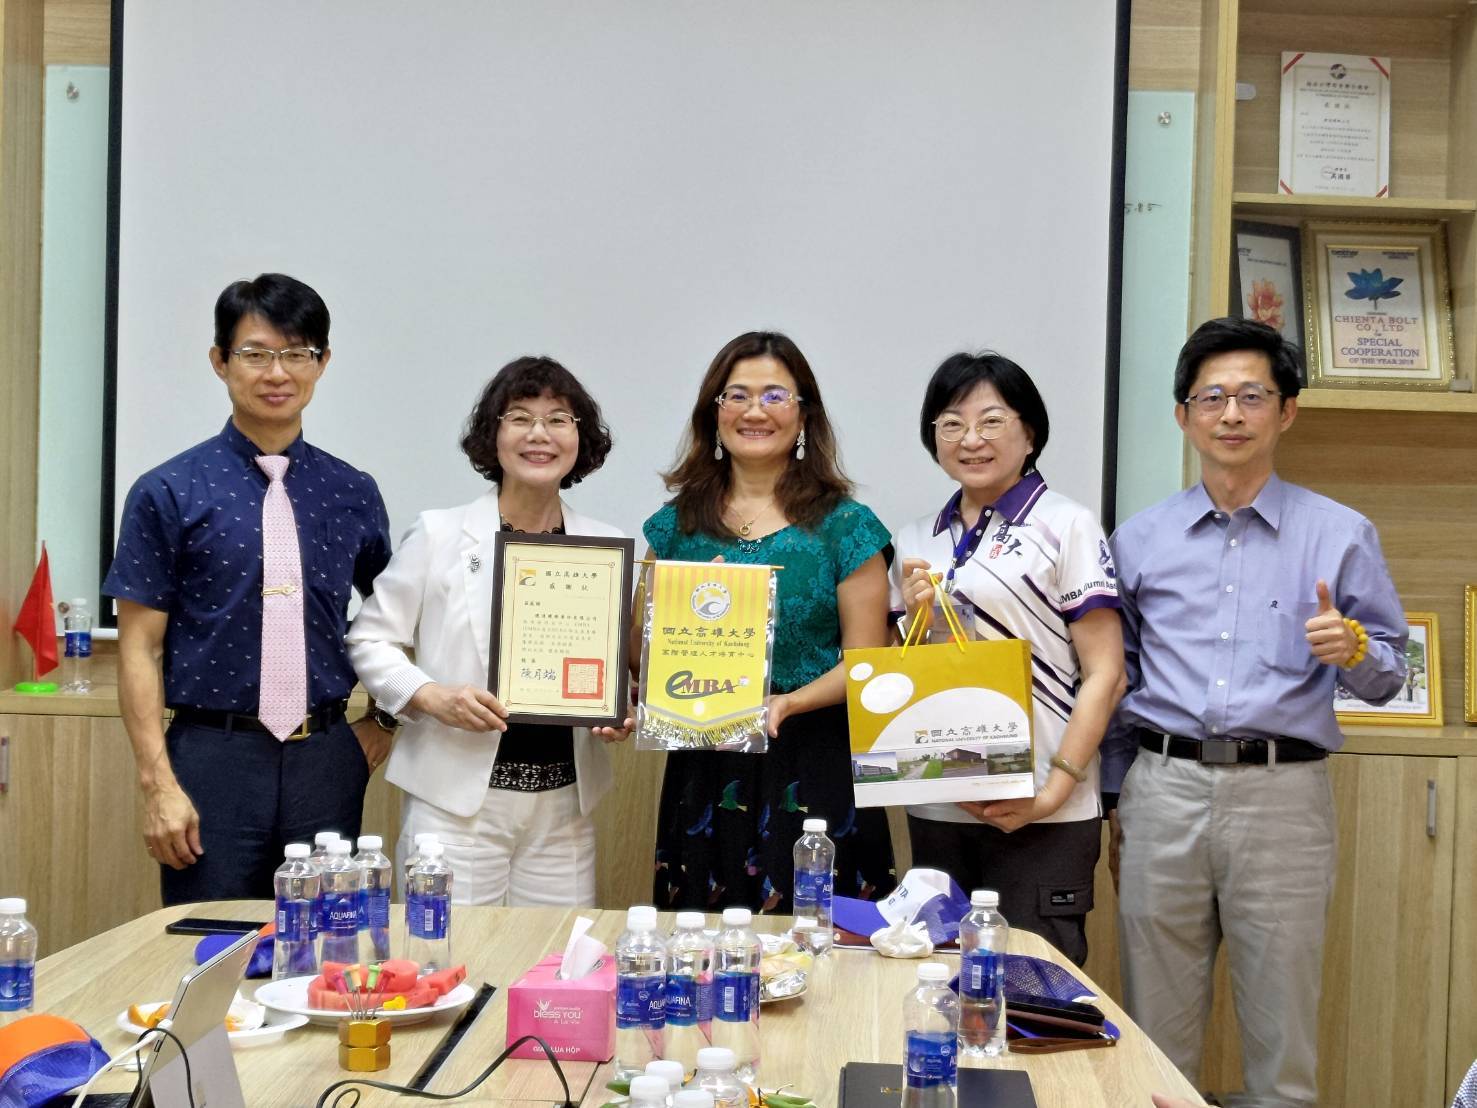 NUK EMBA members visited alumni enterprises in Vietnam 05